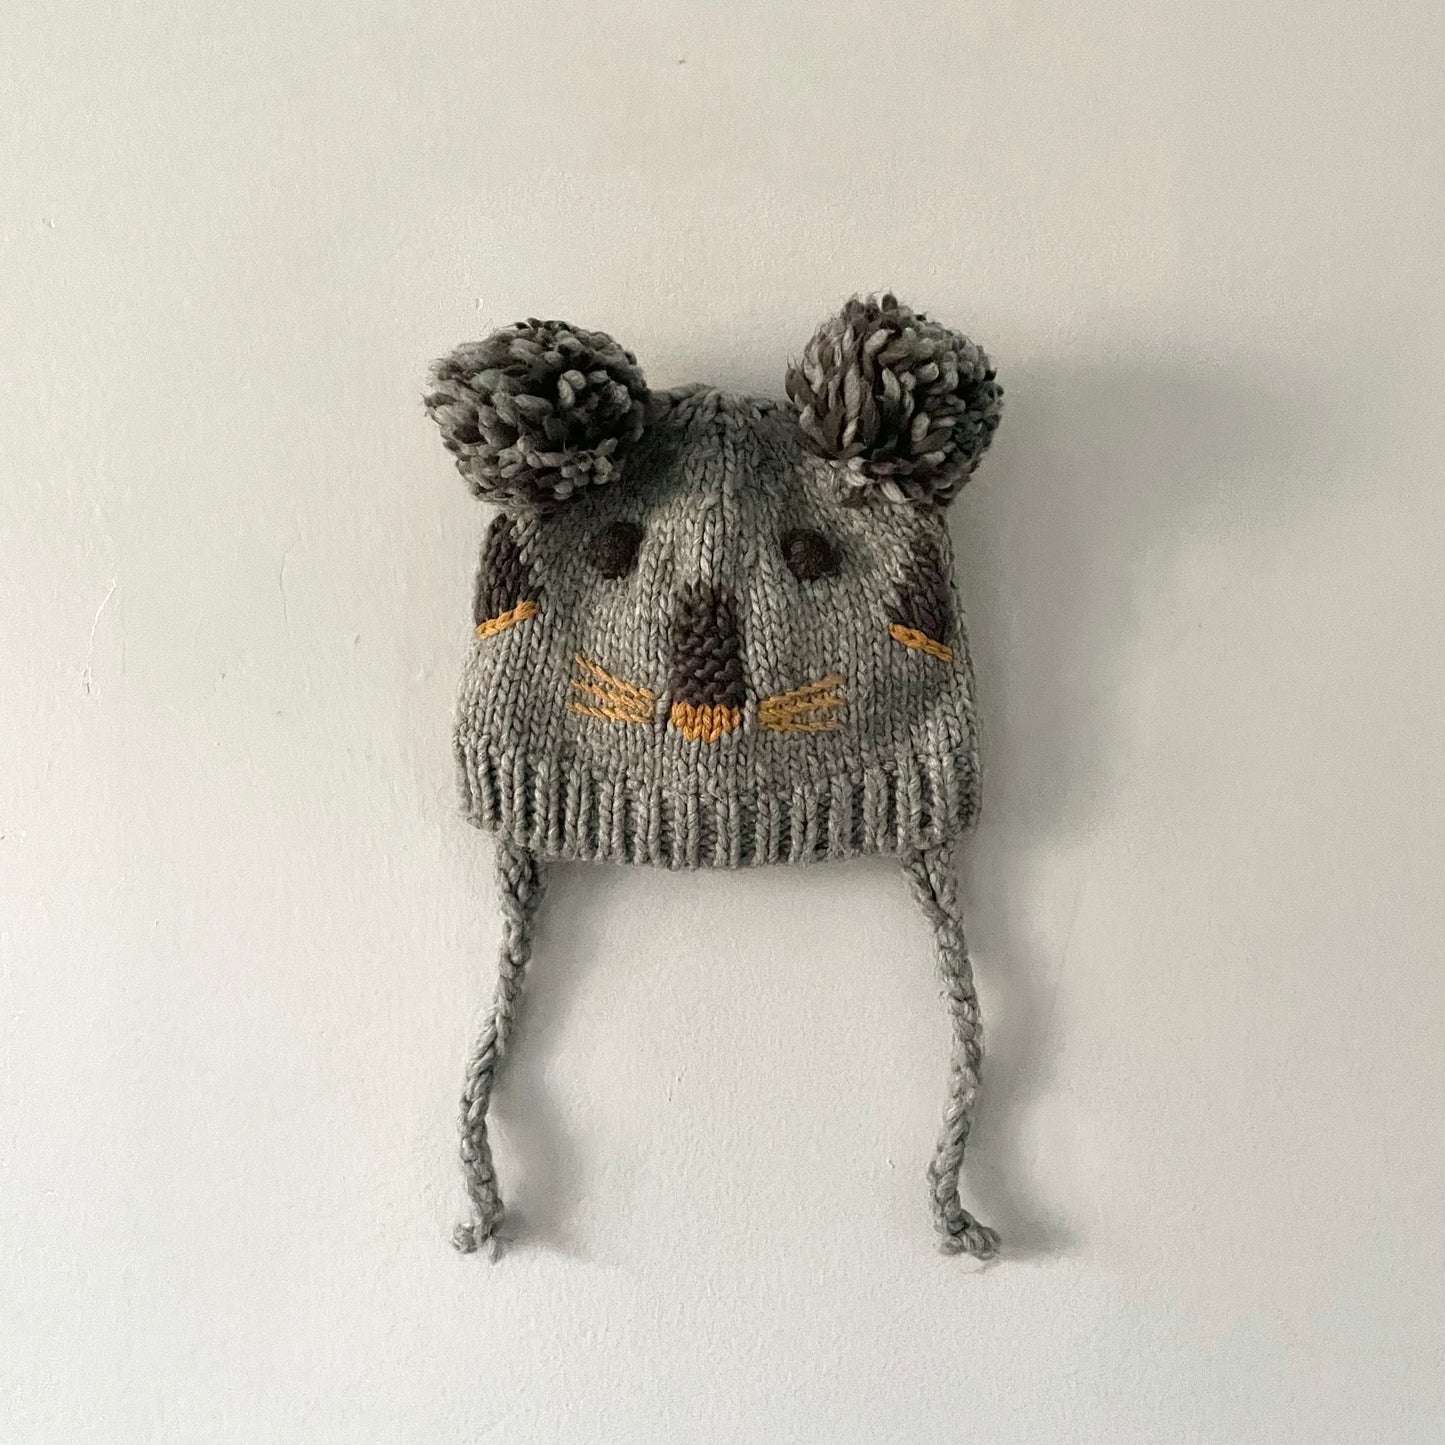 Zara / Koala knit hat / 6-12M